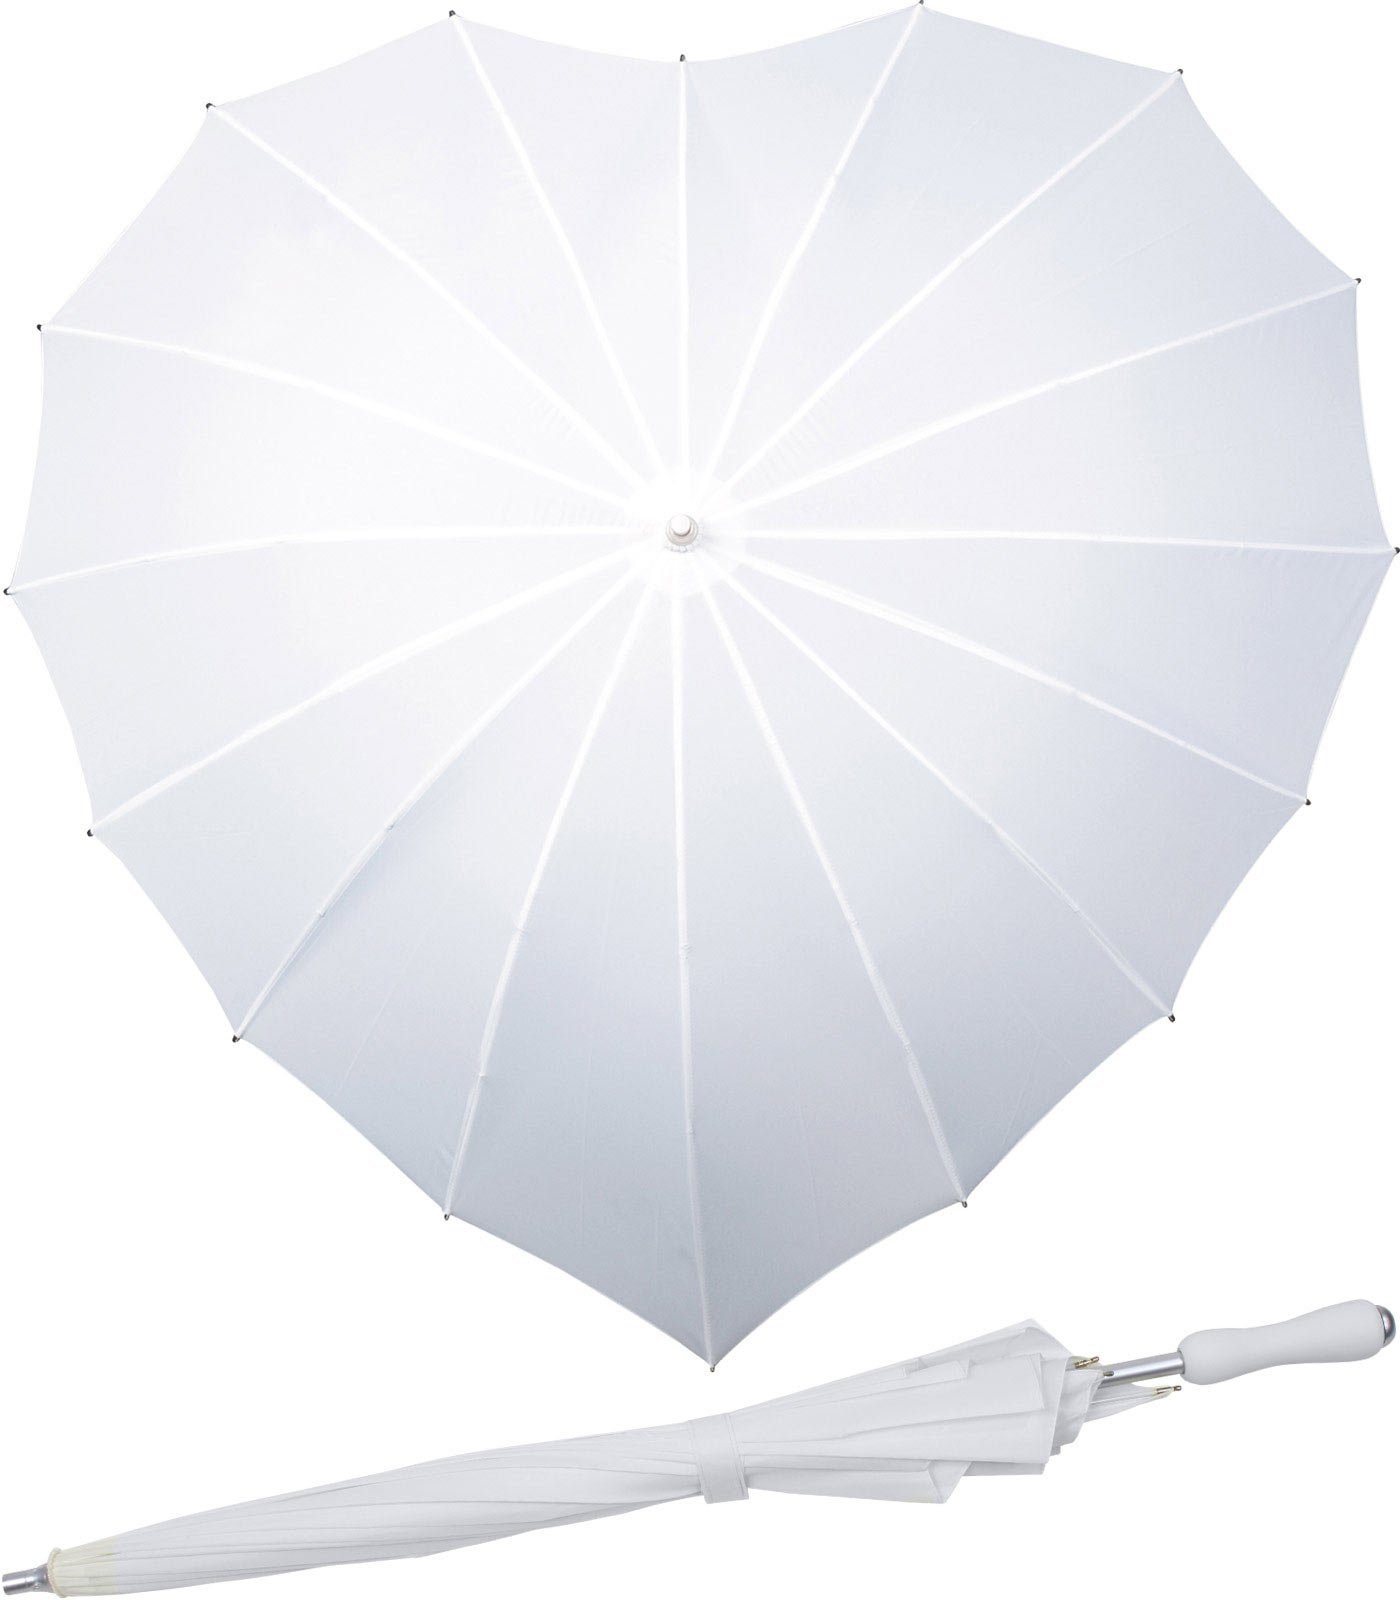 Impliva Langregenschirm Regenschirm 16-teilig in Herzform Hochzeitsschirm, herzförmiger Regenschirm weiß